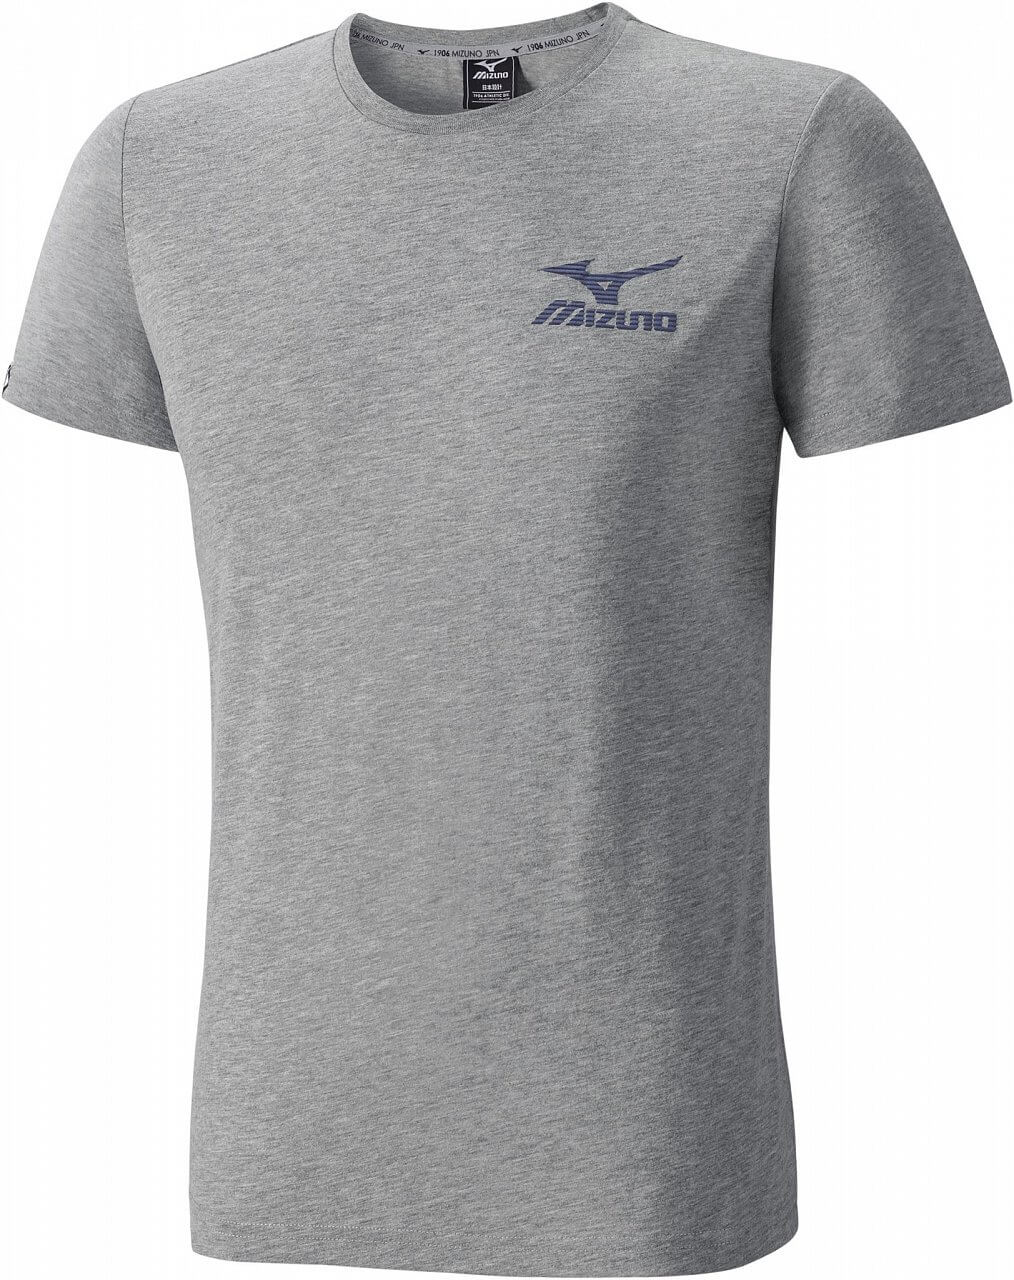 Pánské sportovní tričko Mizuno Logo Tee